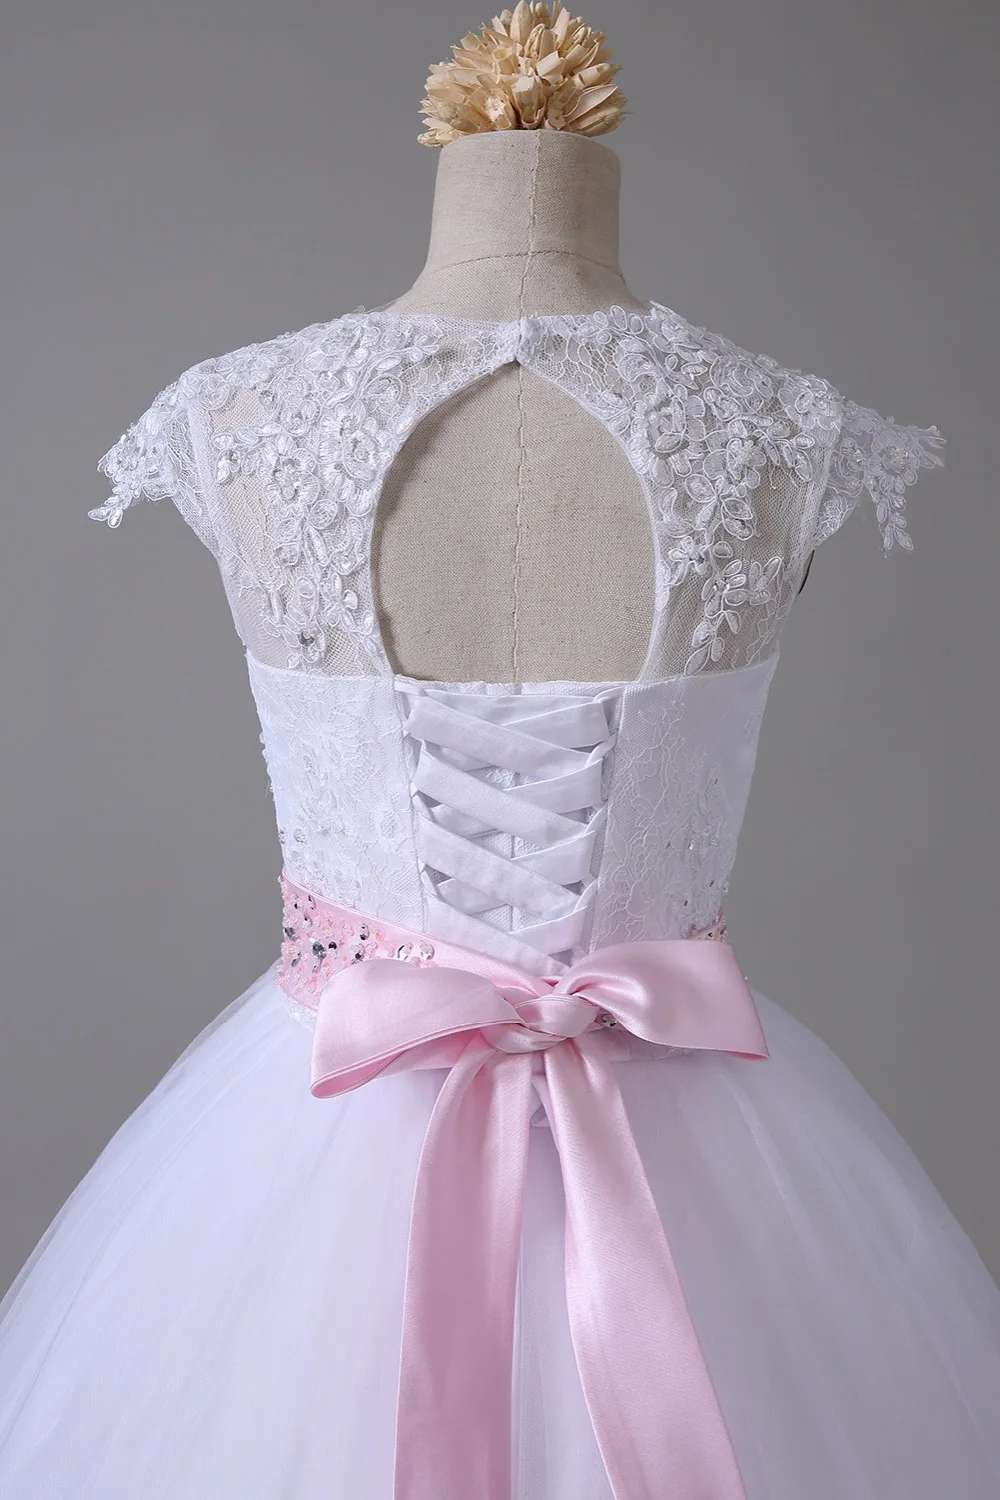 Белые Платья с цветочным узором для девочек на свадьбу, бальное платье с рукавами-крылышками, фатиновые Аппликации, кружевные кристаллы, платья для первого причастия